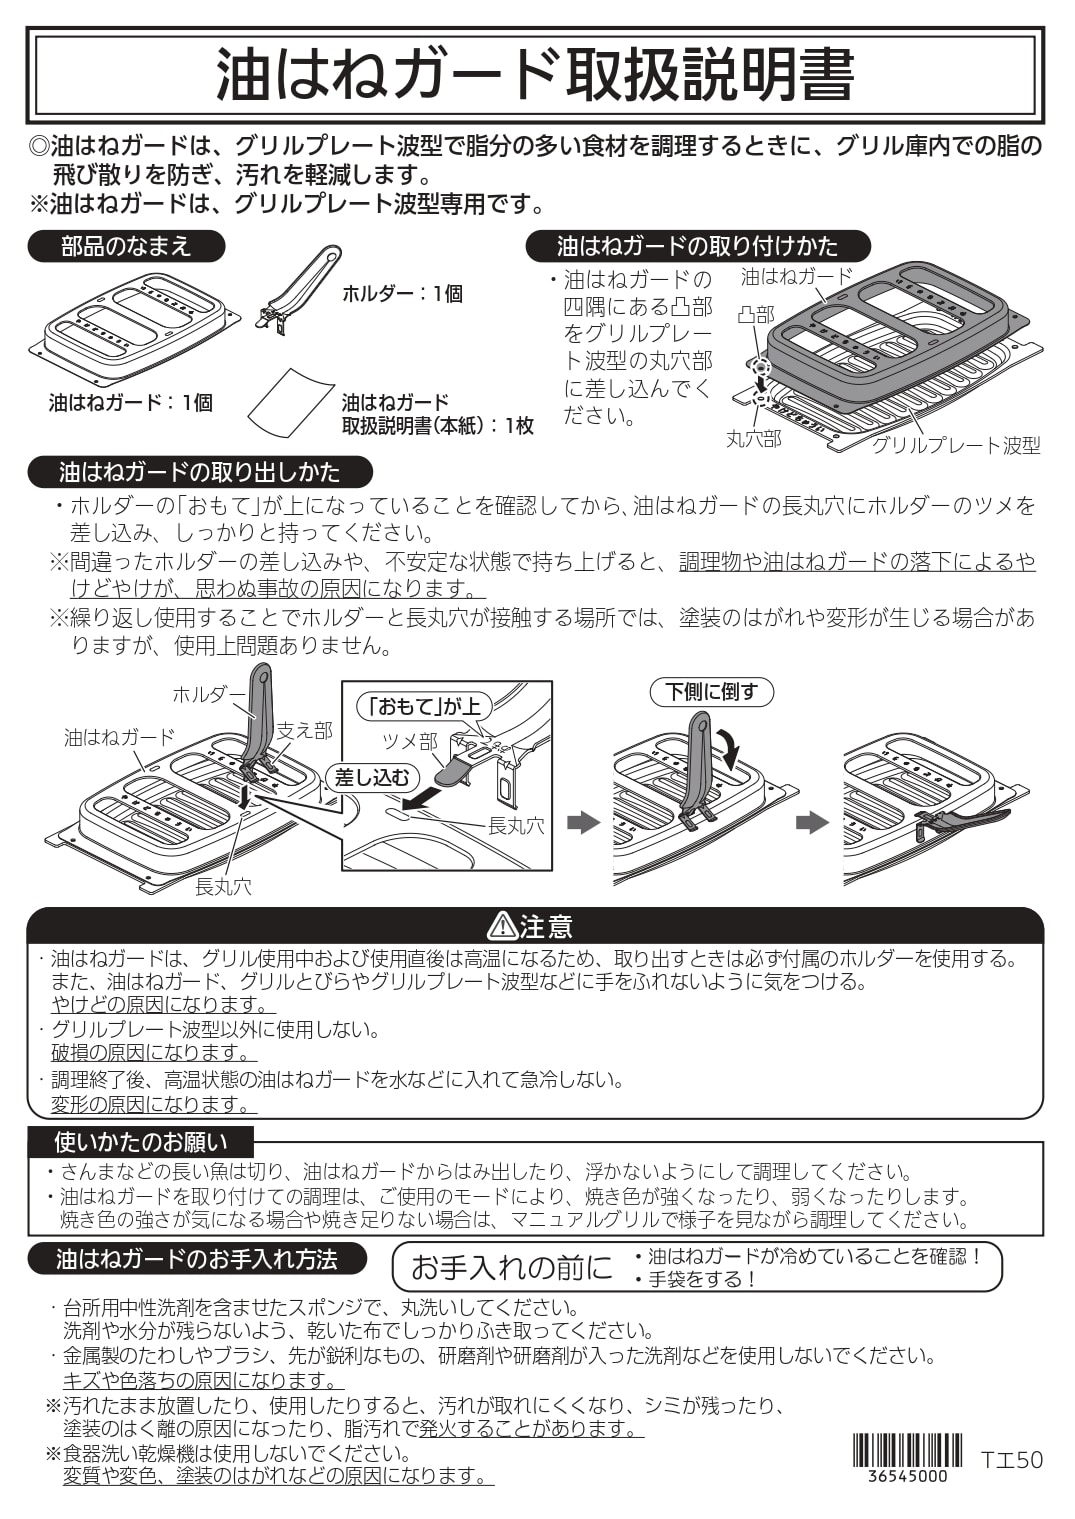 クックボックスLP0157（ワイドグリル用・ピアットシリーズ用【HM